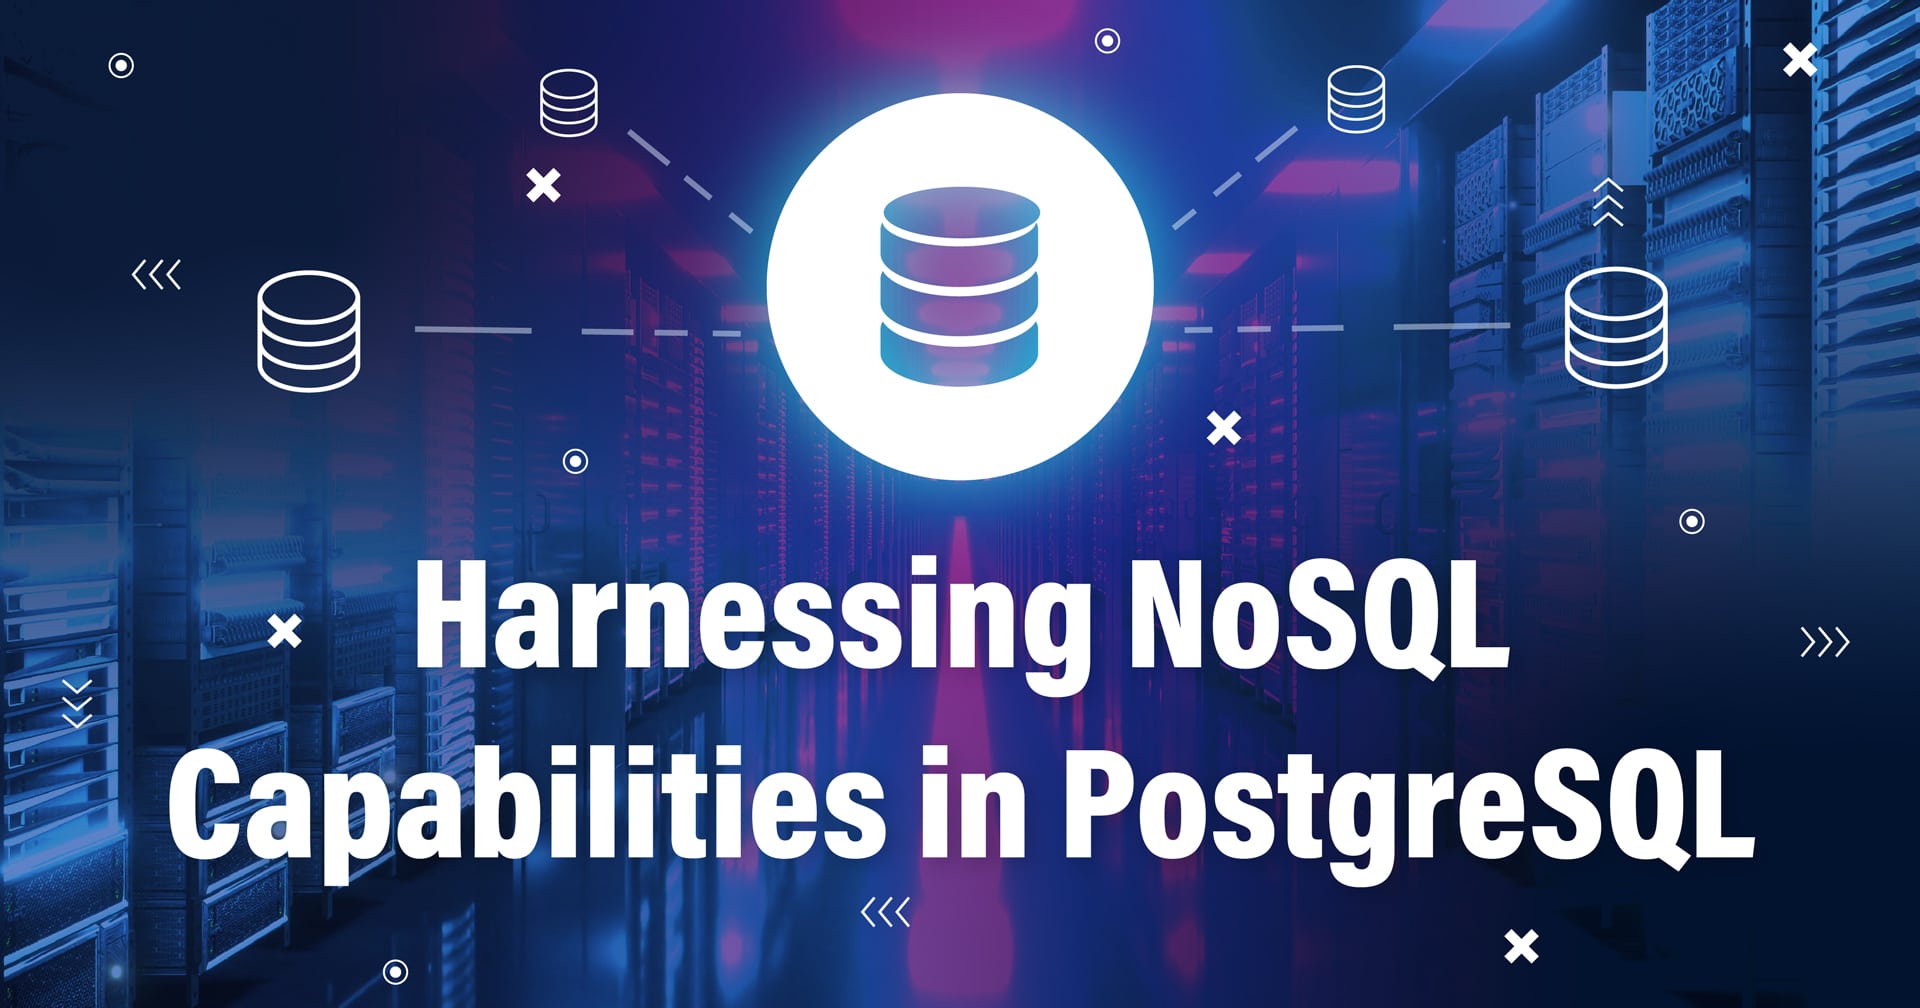 Image avec un symbole représentant une base de données connectée à d'autres bases de données et le texte Harnessing NoSQL Capabilities in PostgreSQL en bas.